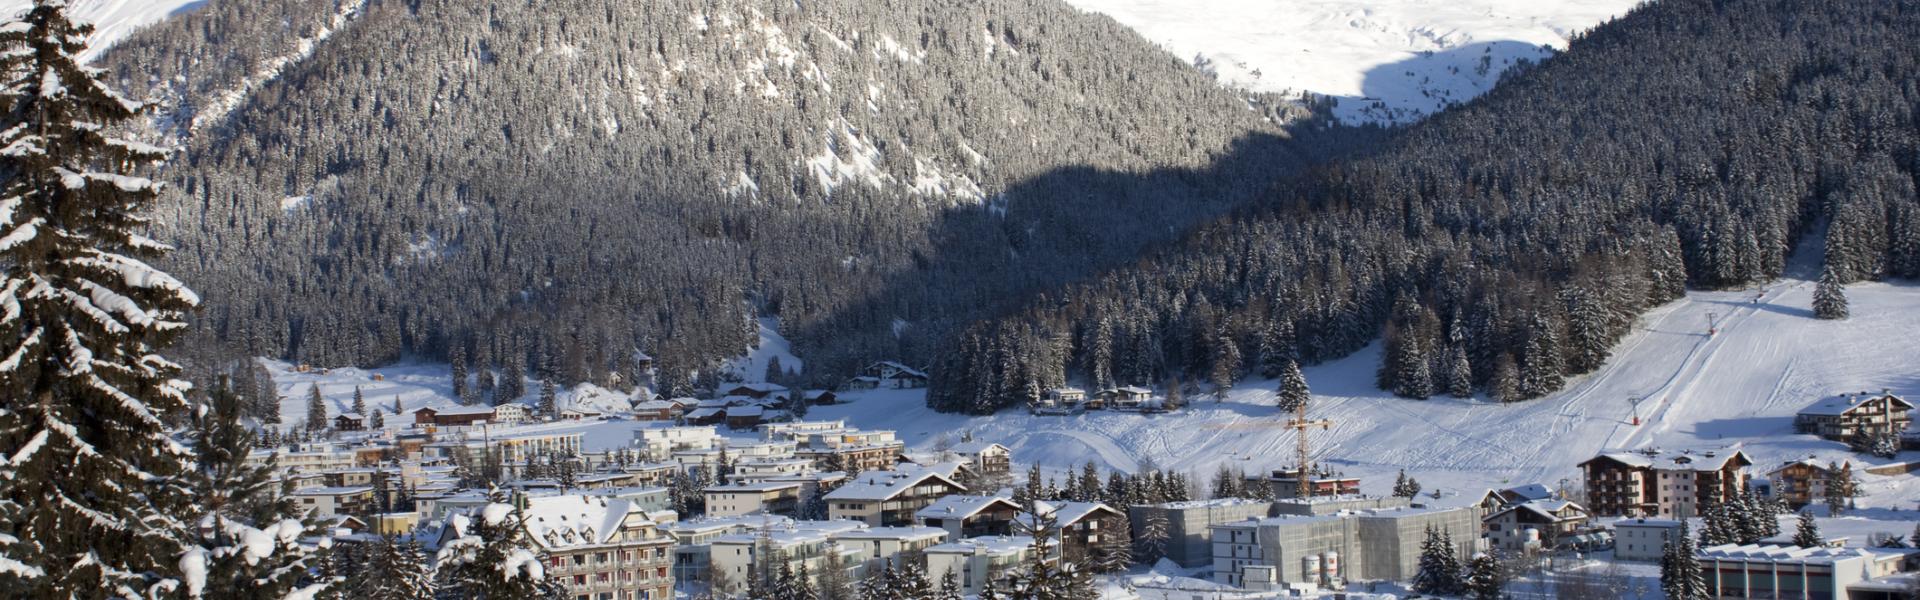 Ferienwohnungen & Apartments in Davos - HomeToGo